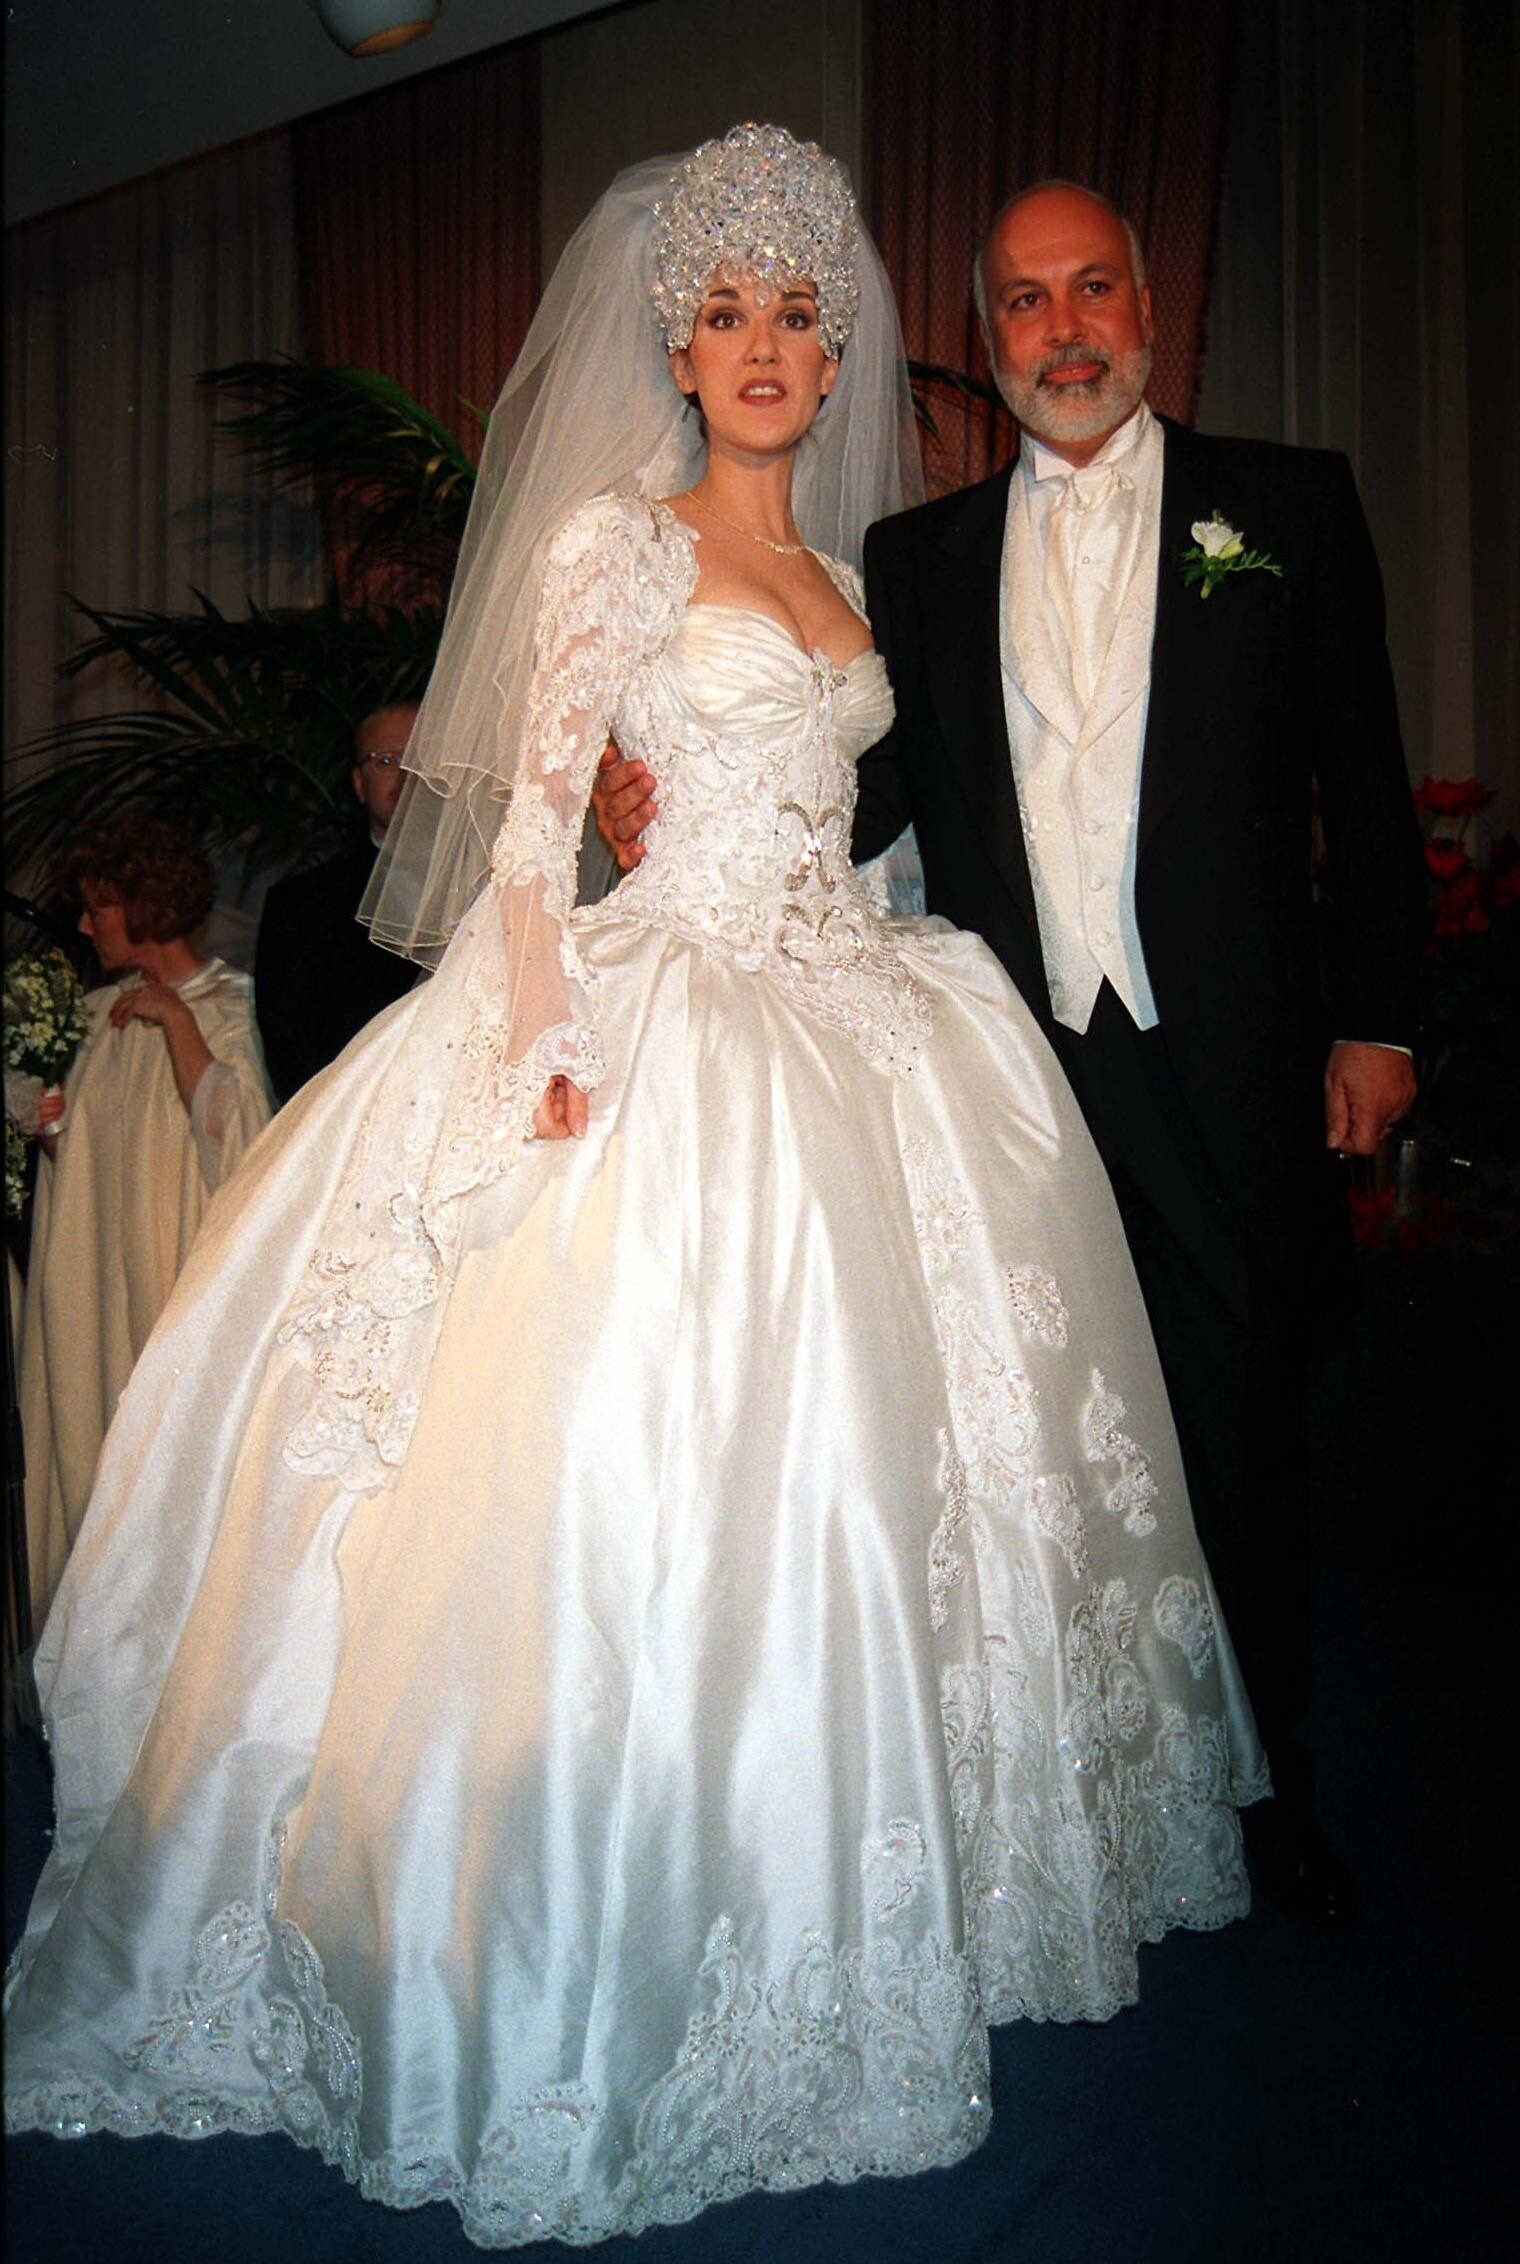 Свадьба легендарной певицы Селин Дион с музыкальным продюсером Рене Анжелила состоялась в декабре 1994 года. Молодая Селин шла под венец в пышном платье с очень открытым декольте, а ее го...